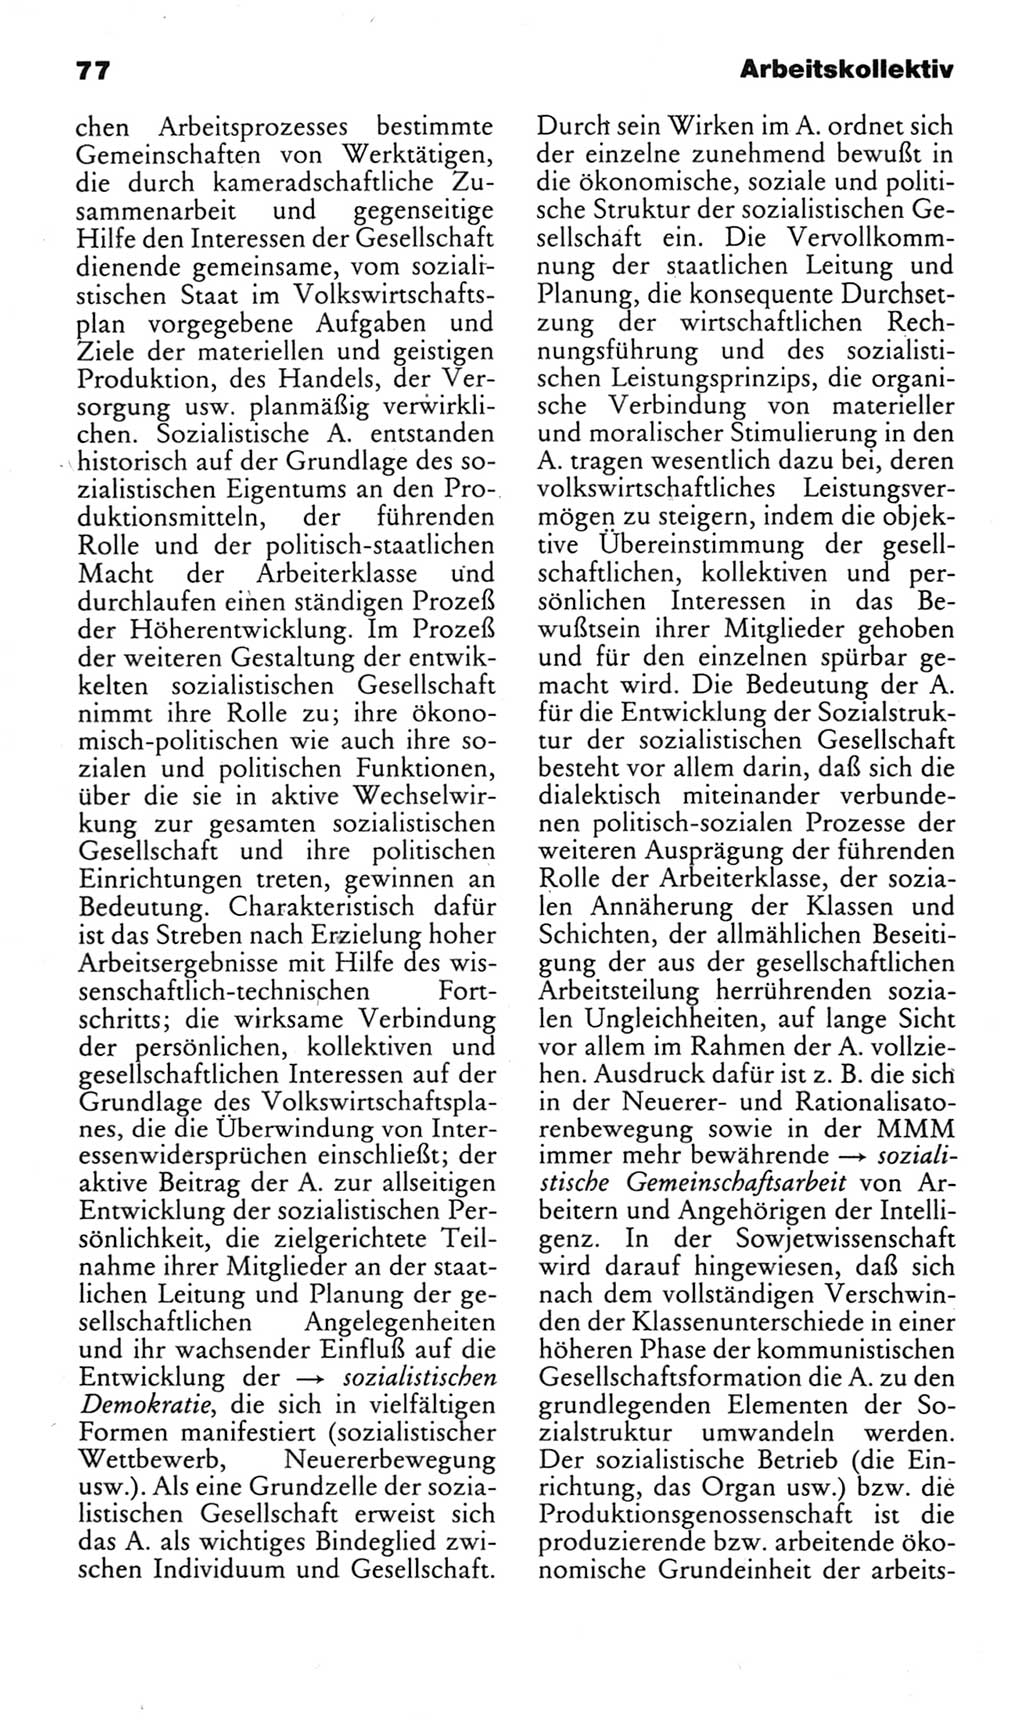 Kleines politisches Wörterbuch [Deutsche Demokratische Republik (DDR)] 1983, Seite 77 (Kl. pol. Wb. DDR 1983, S. 77)